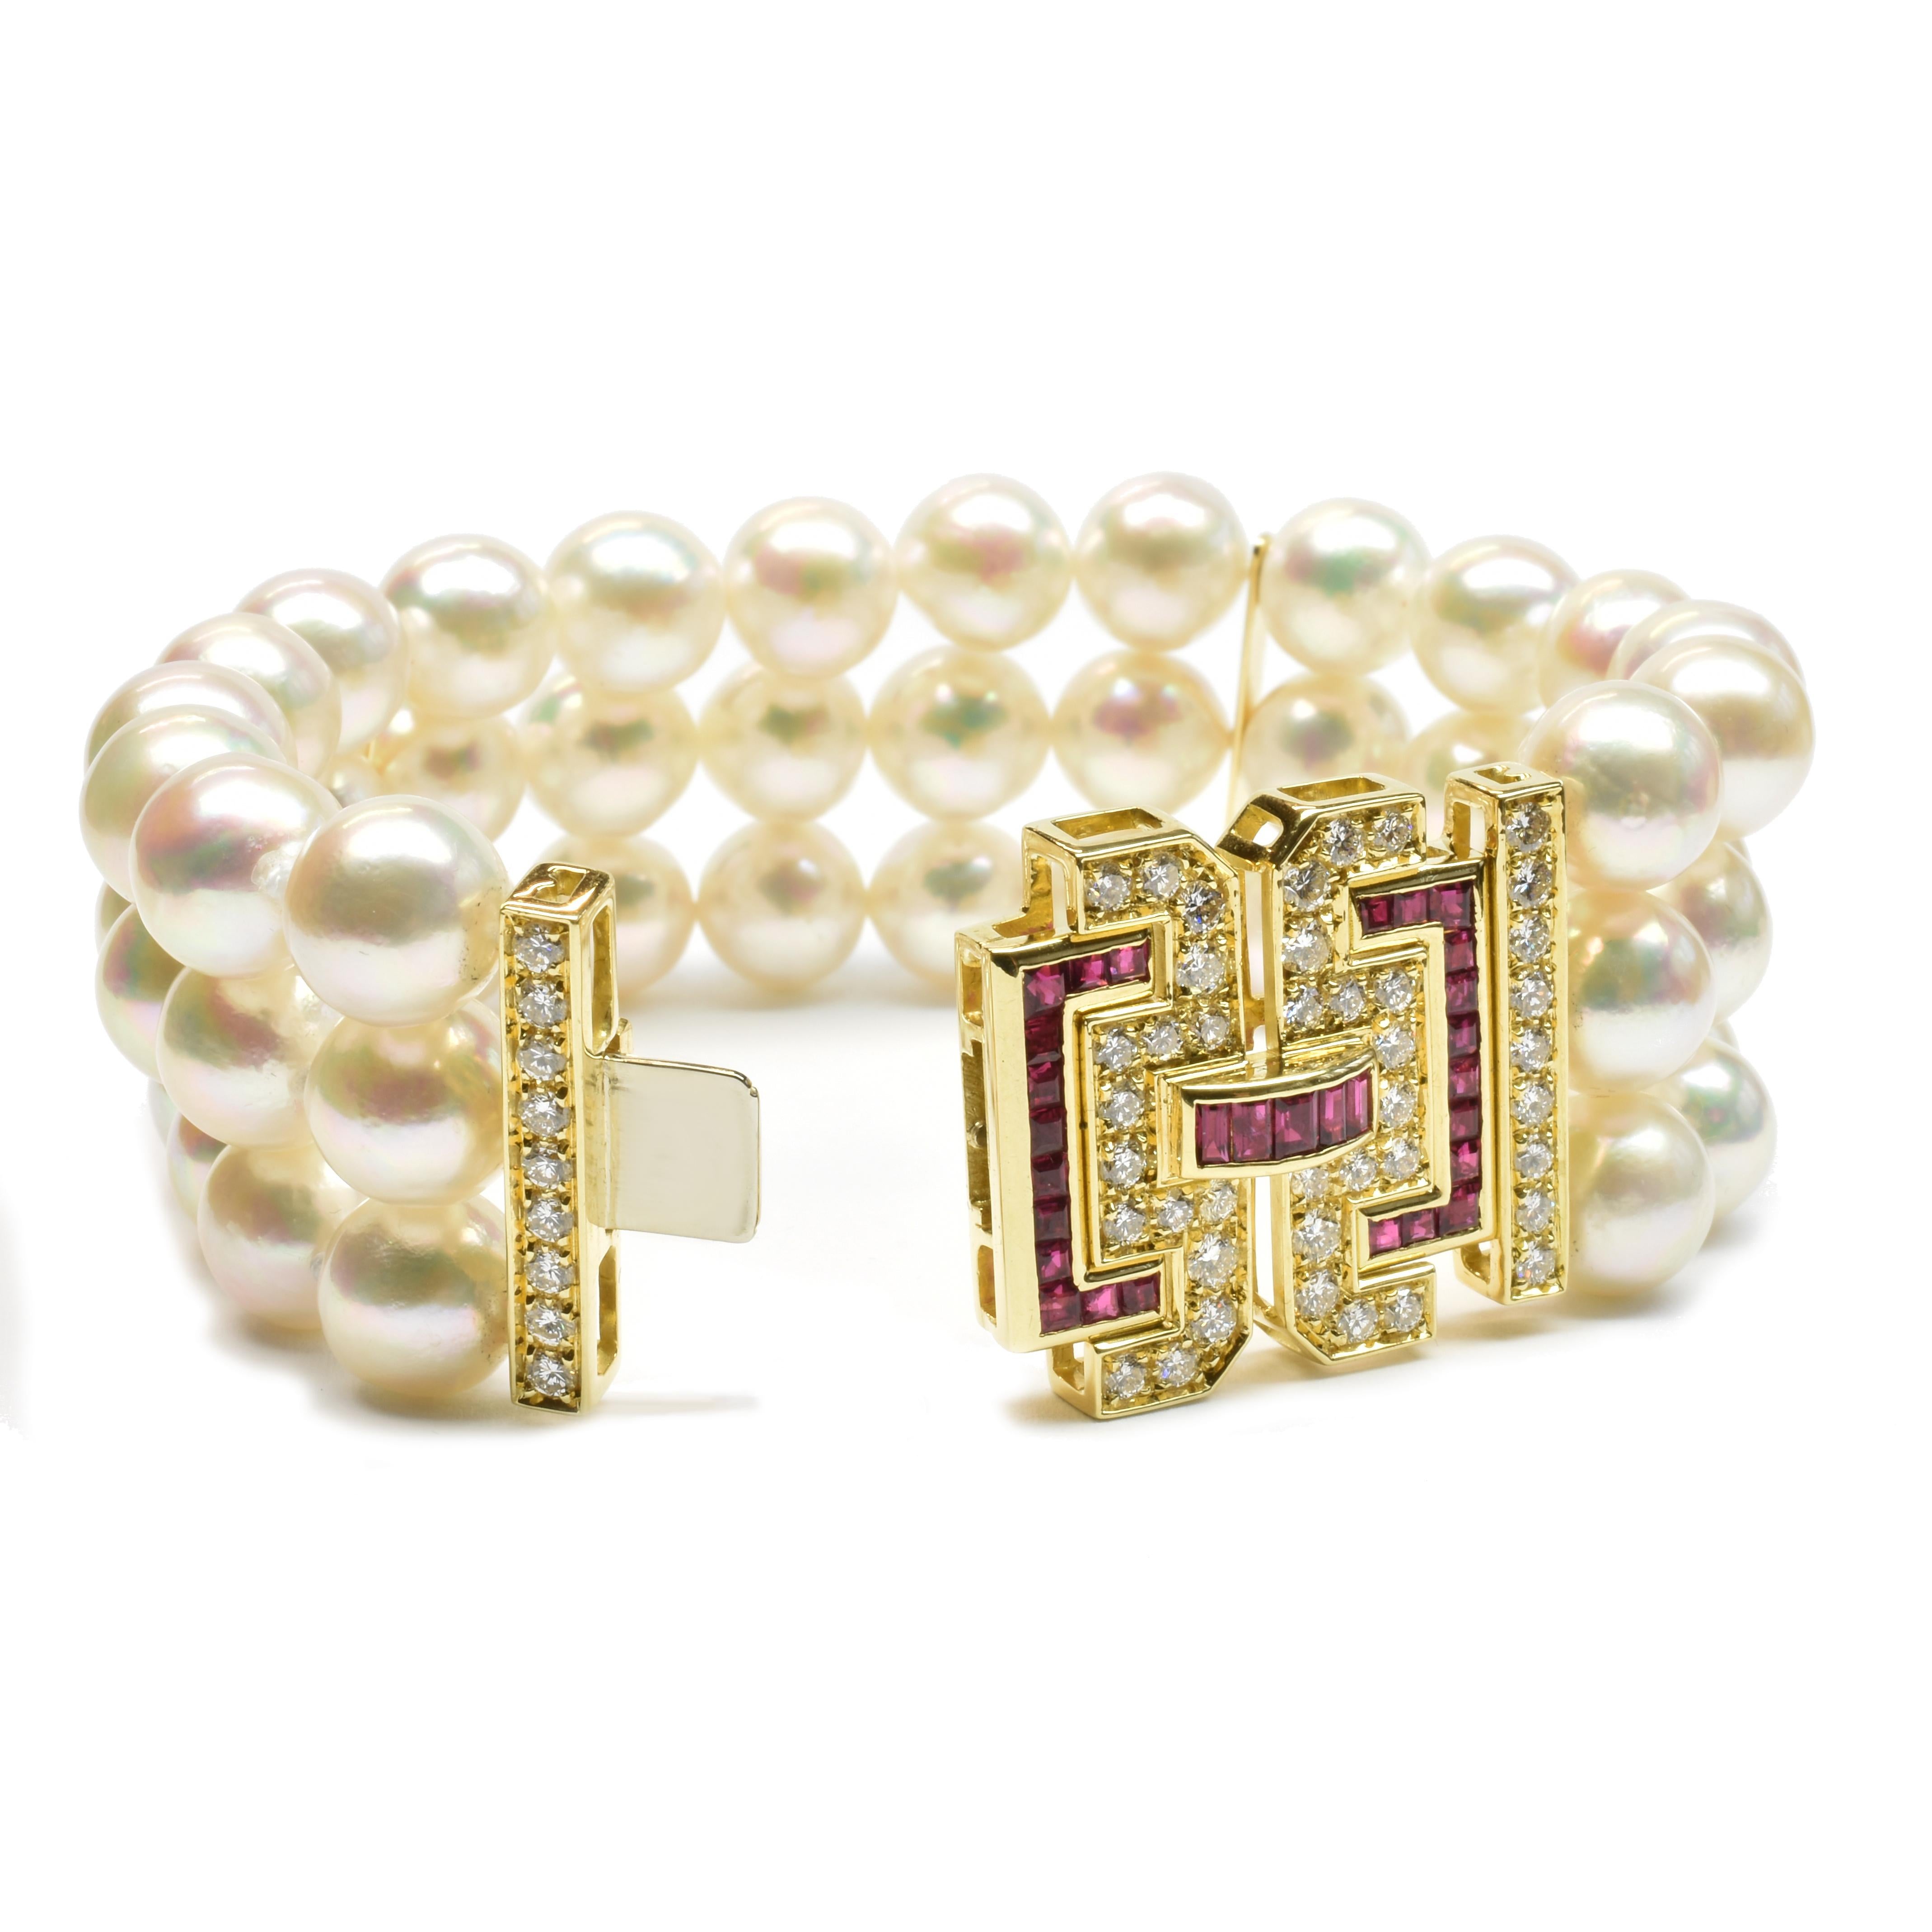 bracelet en or jaune 18Kt avec une triple rangée de perles naturelles de culture japonaise Akoya de 9,50 mm. 
Perles de qualité supérieure avec un haut degré de rondeur et de couleur.
Fermoir unique de style Art déco avec rubis naturels taillés en